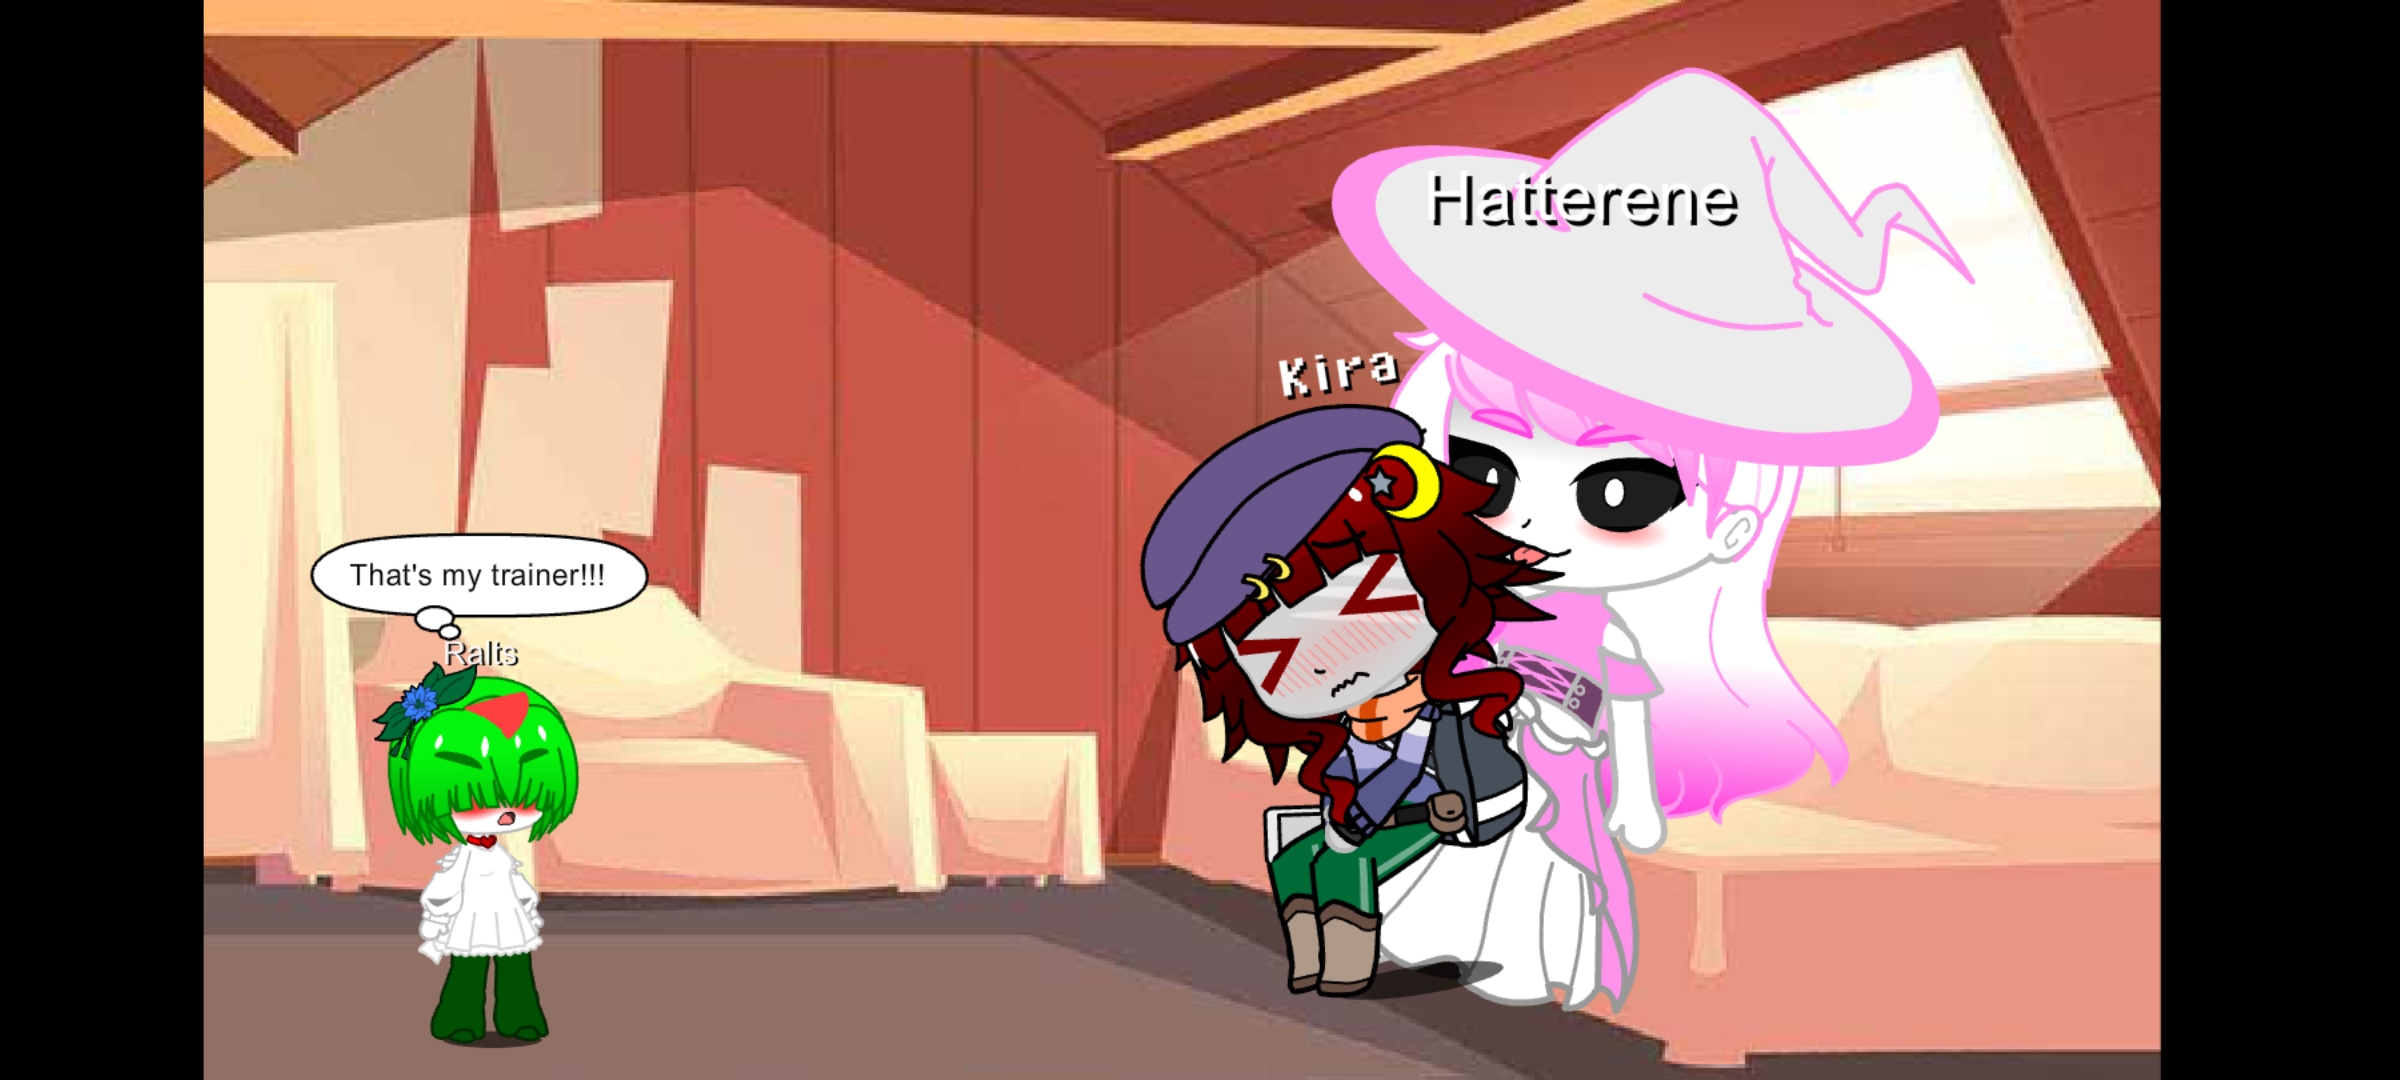 Kira's lost her domination against tall shiny Hatterene